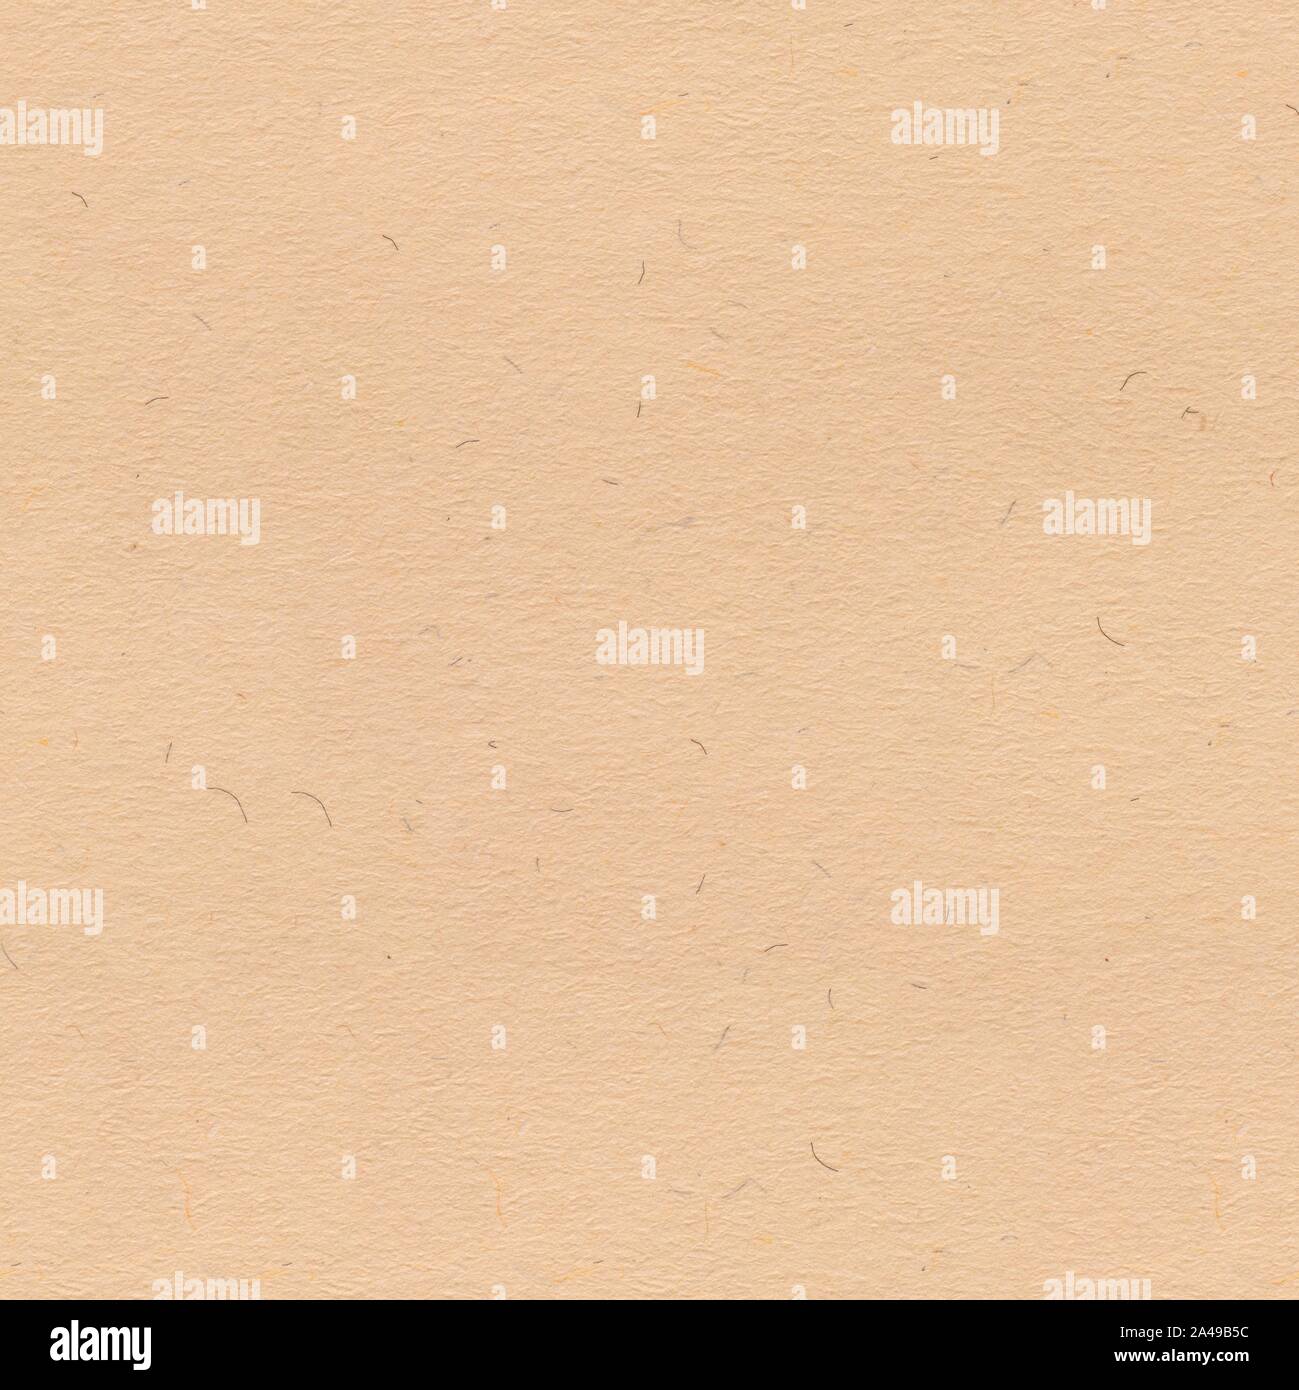 Helles tan Papier Muster: Karton Platz Hintergrund Wand. Nahtlose  quadratische Hintergrund, Fliese bereit Stockfotografie - Alamy